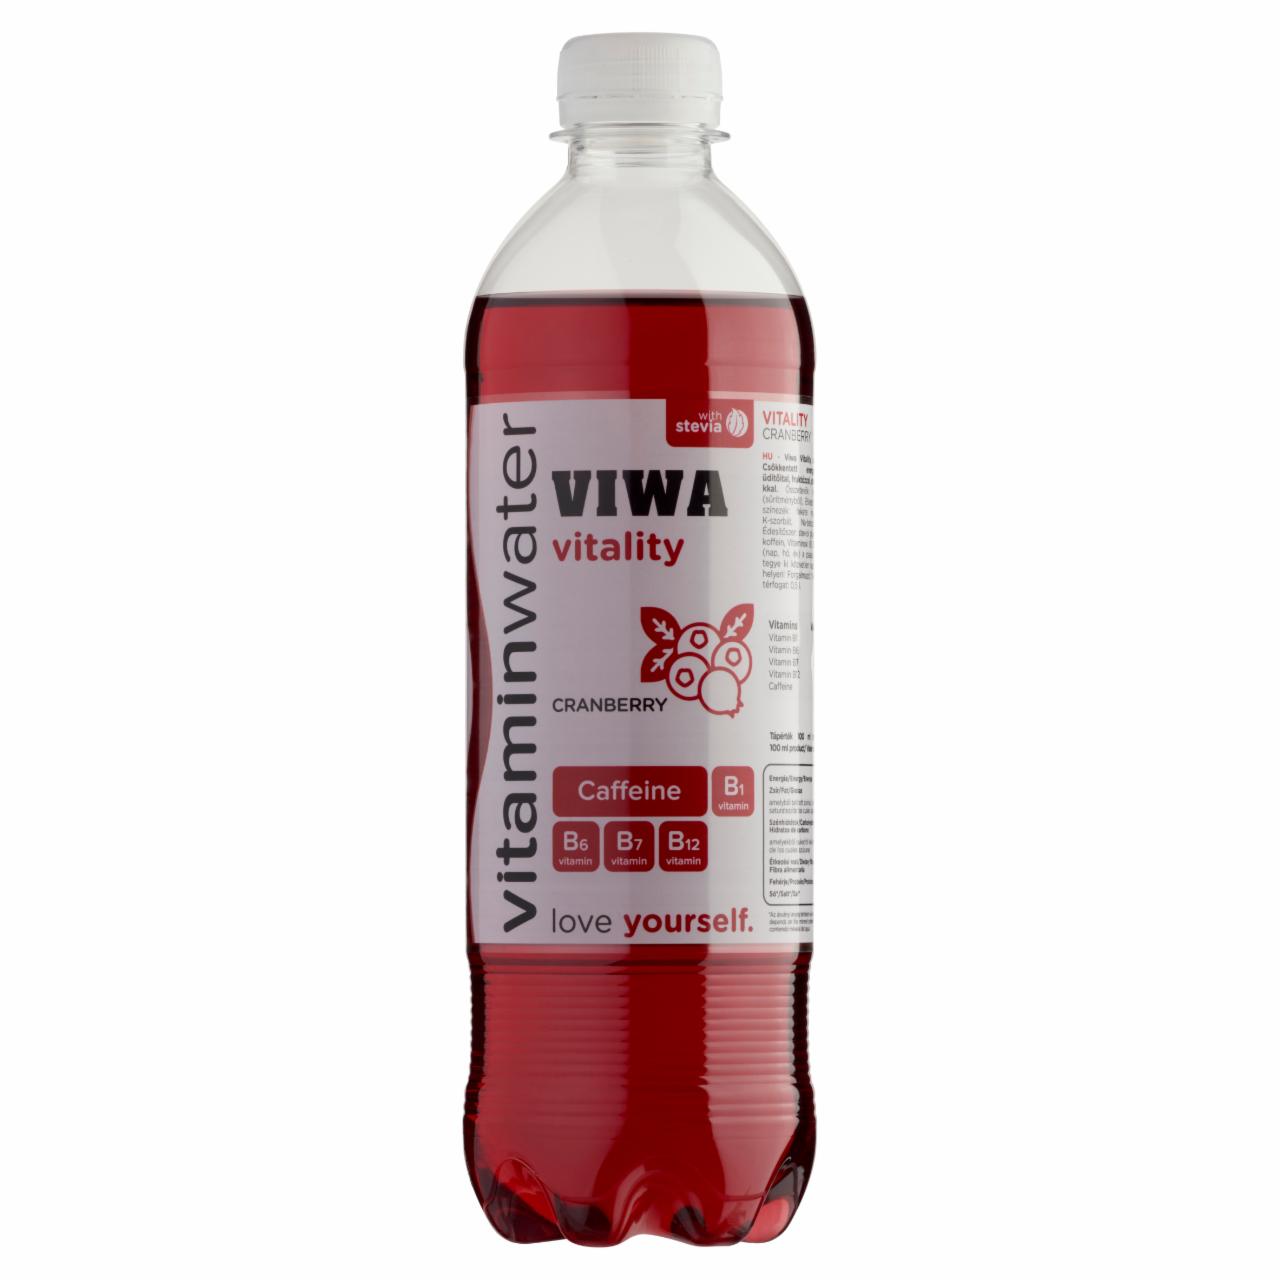 Képek - Viwa Vitaminwater Vitality vörös áfonyás csökkentett energiatartalmú szénsavmentes üdítőital 600 ml